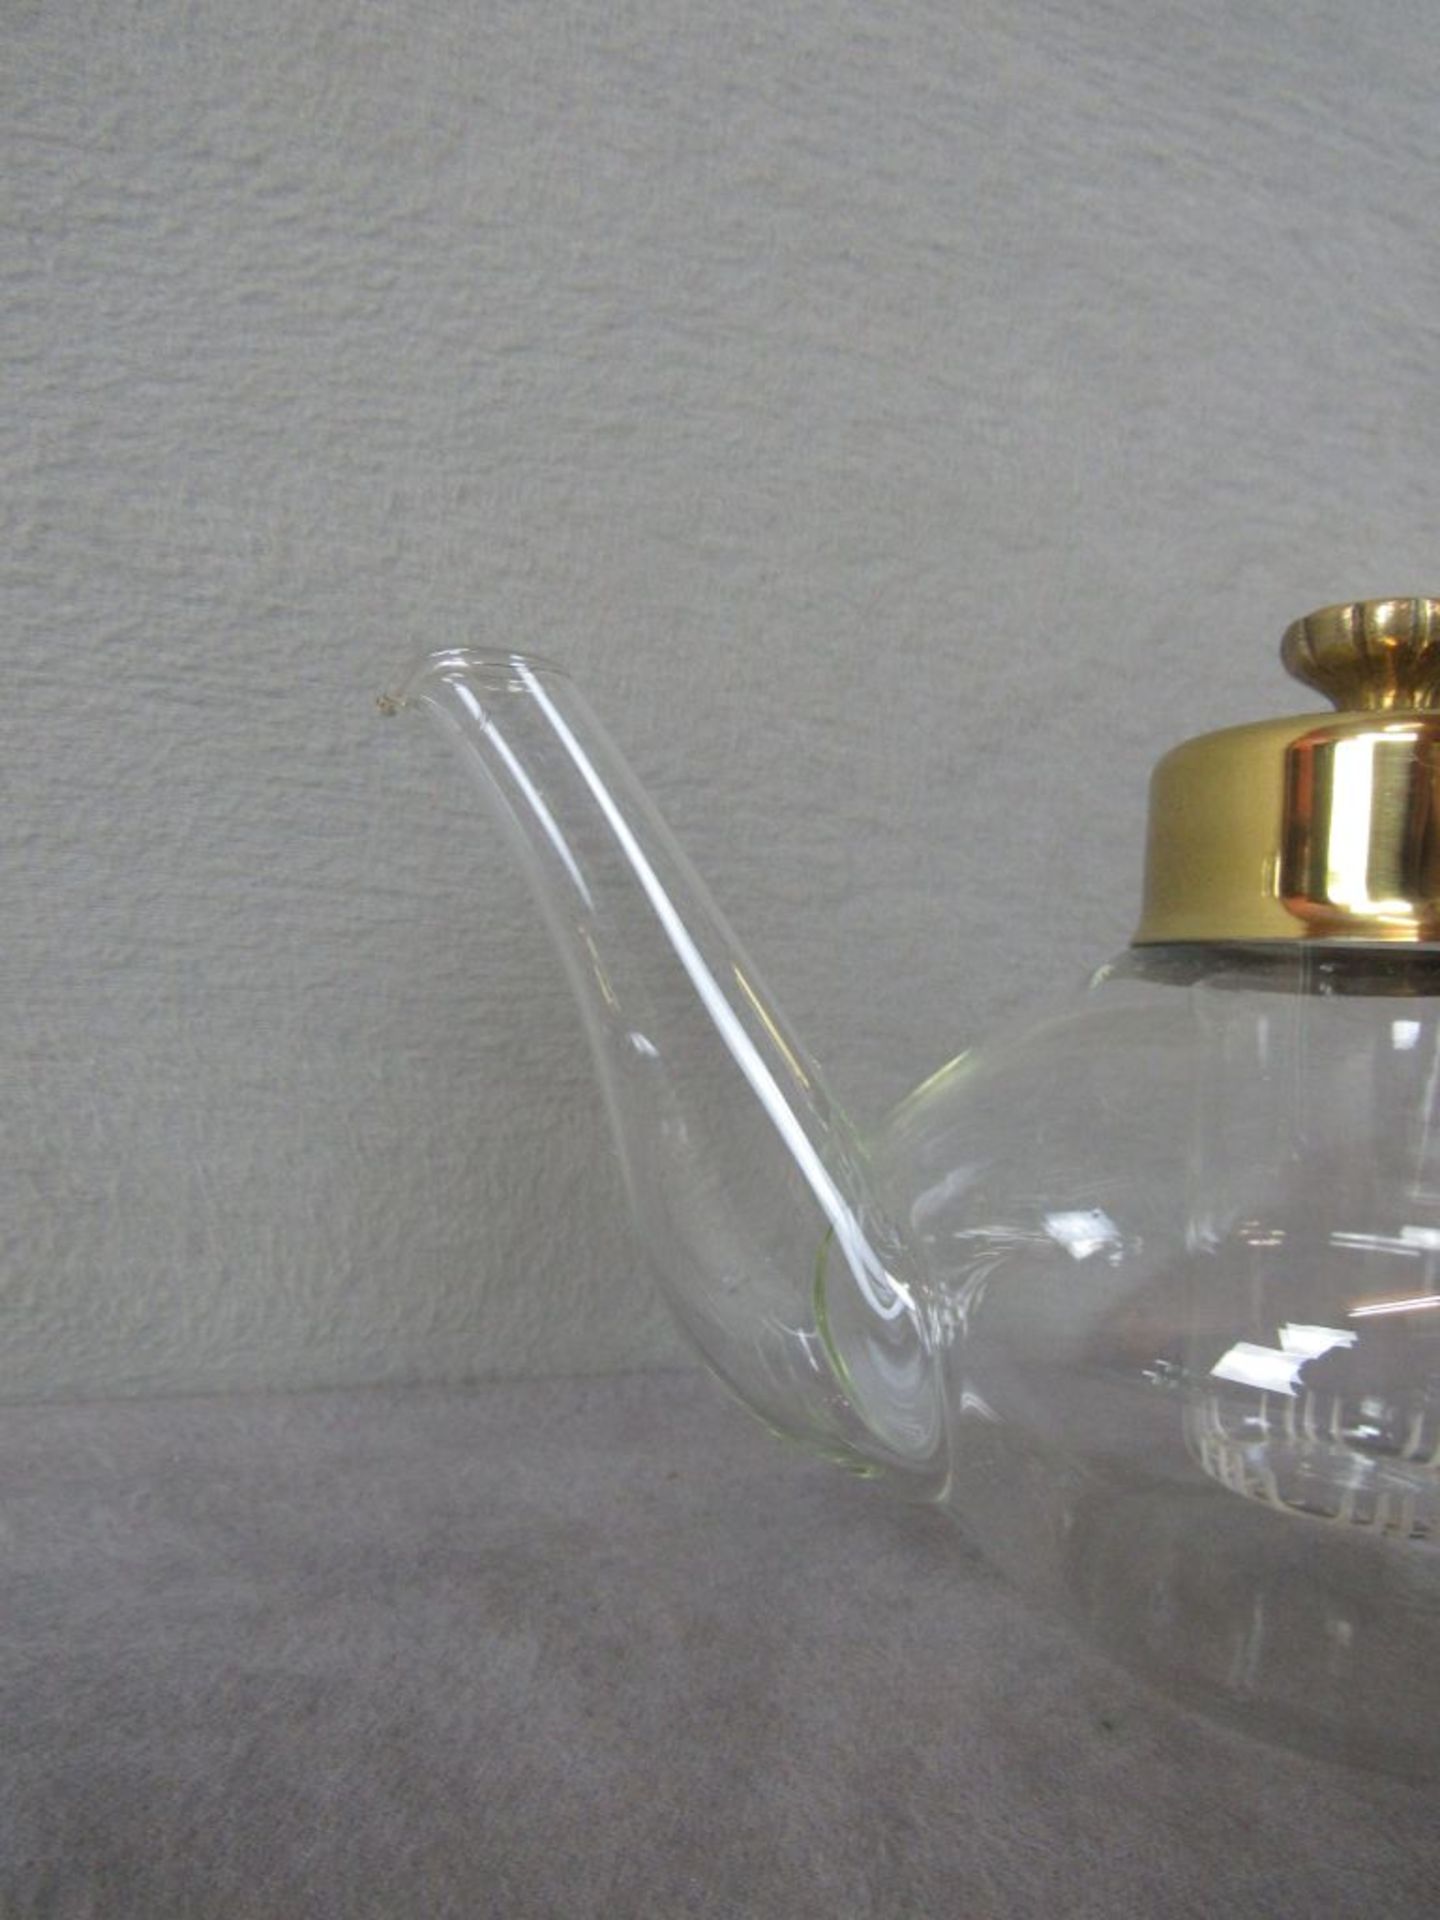 Jenaer Glas Teekanne mit Einsatz wohl Wagenfeld Höhe:14,5cm Breite:27cm Fassungsvermögen: 1 Liter - Bild 3 aus 8